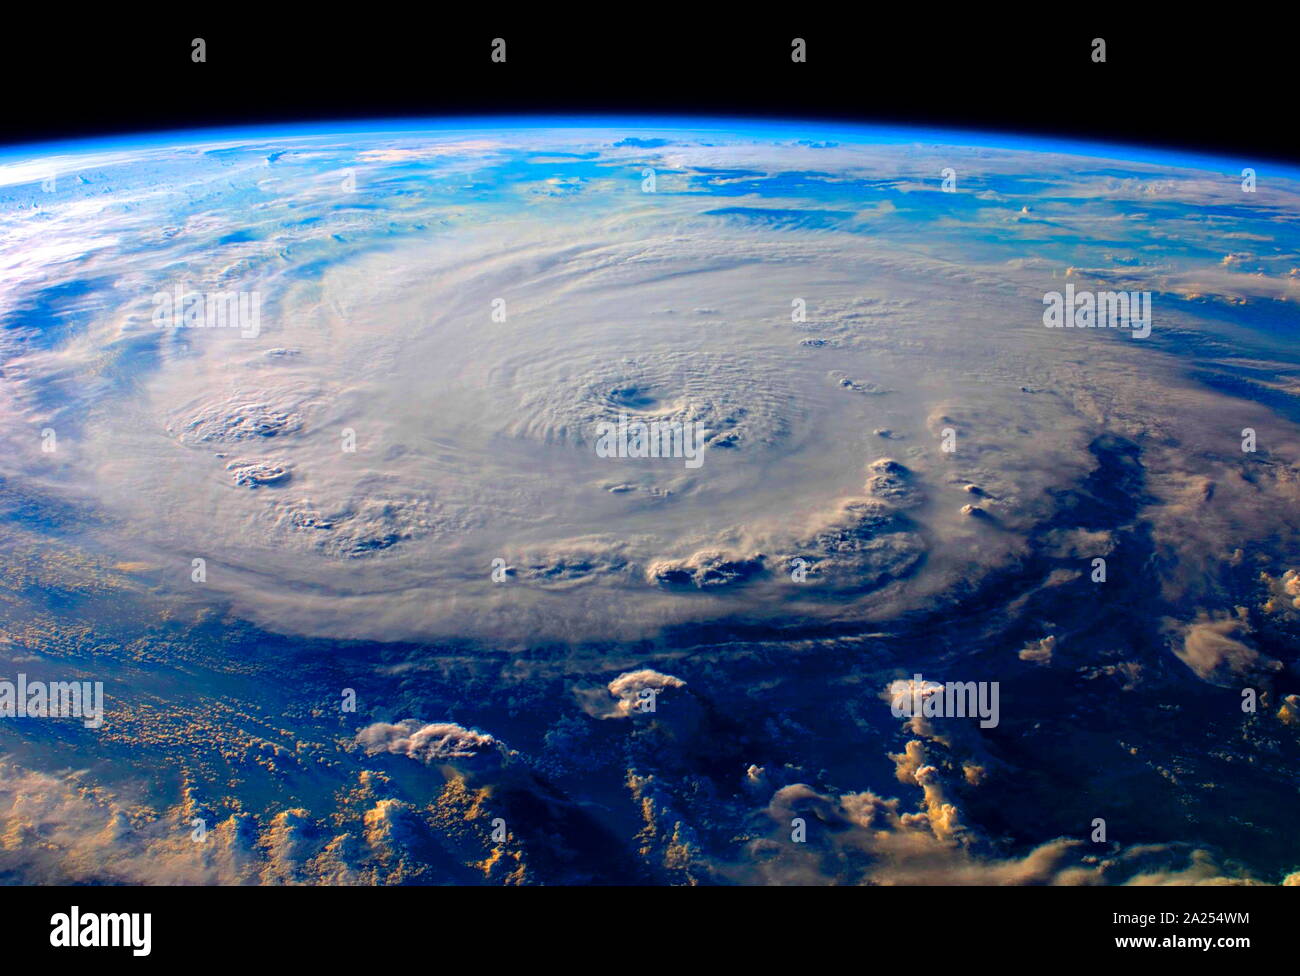 Hurrikan Felix von ISS, 03. September 2007. Hurrikan Felix von der Internationalen Raumstation gesehen wurde eine Kategorie 5. Felix aus einer tropischen Welle am 31. August, durch die südlichen Inseln über dem Winde am 1. September vor Stärkung hurricane Status zu erreichen. Einen Tag später es rasch gestärkt in einen großen Hurrikan und früh am 3. September wurde sie Kategorie 5 Status aktualisiert. Stockfoto